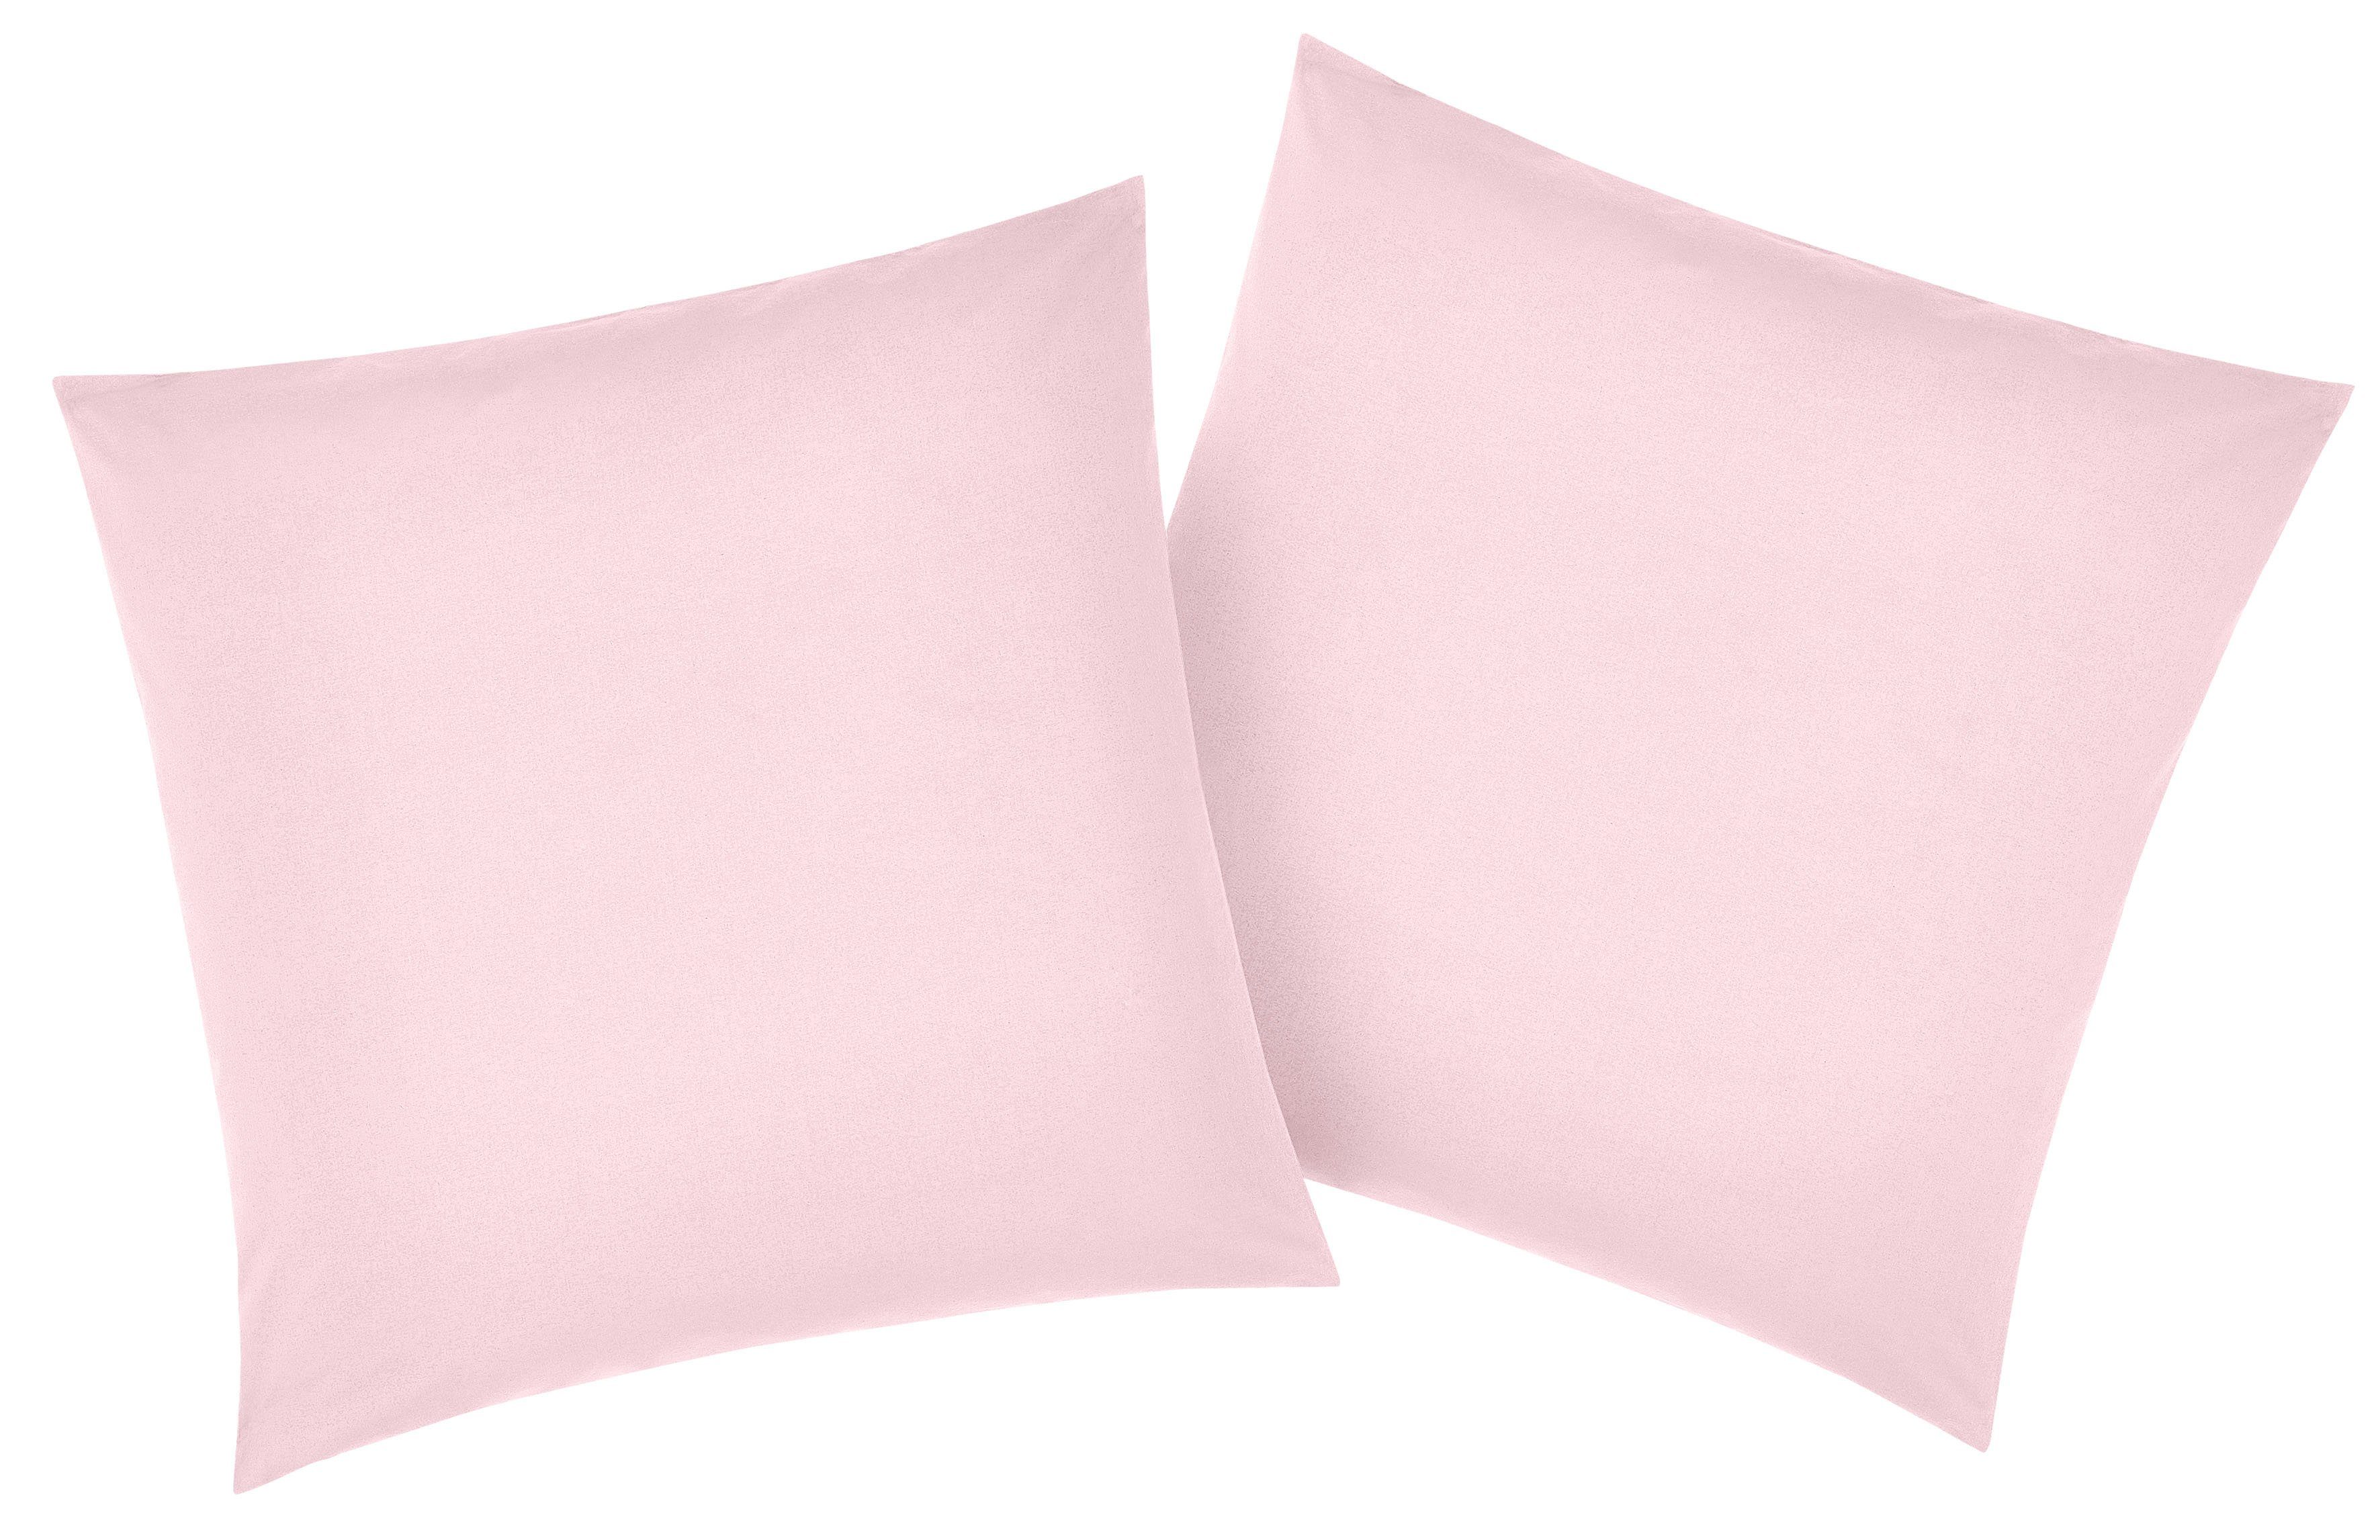 Kissenbezug Luisa, my home (2 Stück), aus 100% Baumwolle, mit Knöpfen, pflegeleicht, atmungsaktiv, uni rosa | Kissenbezüge